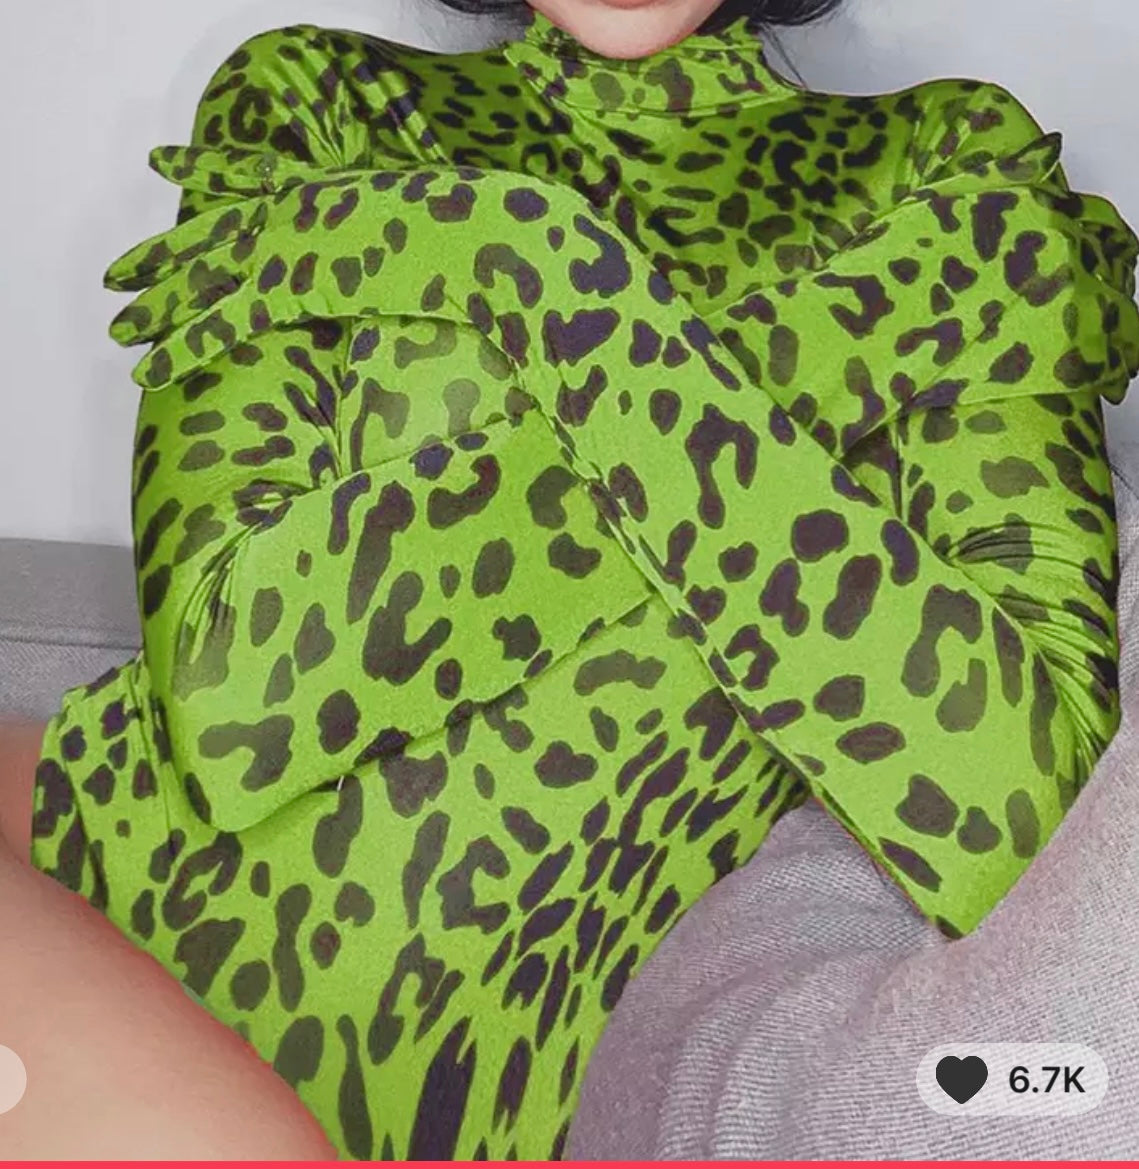 Thee leopard gloved bodysuit